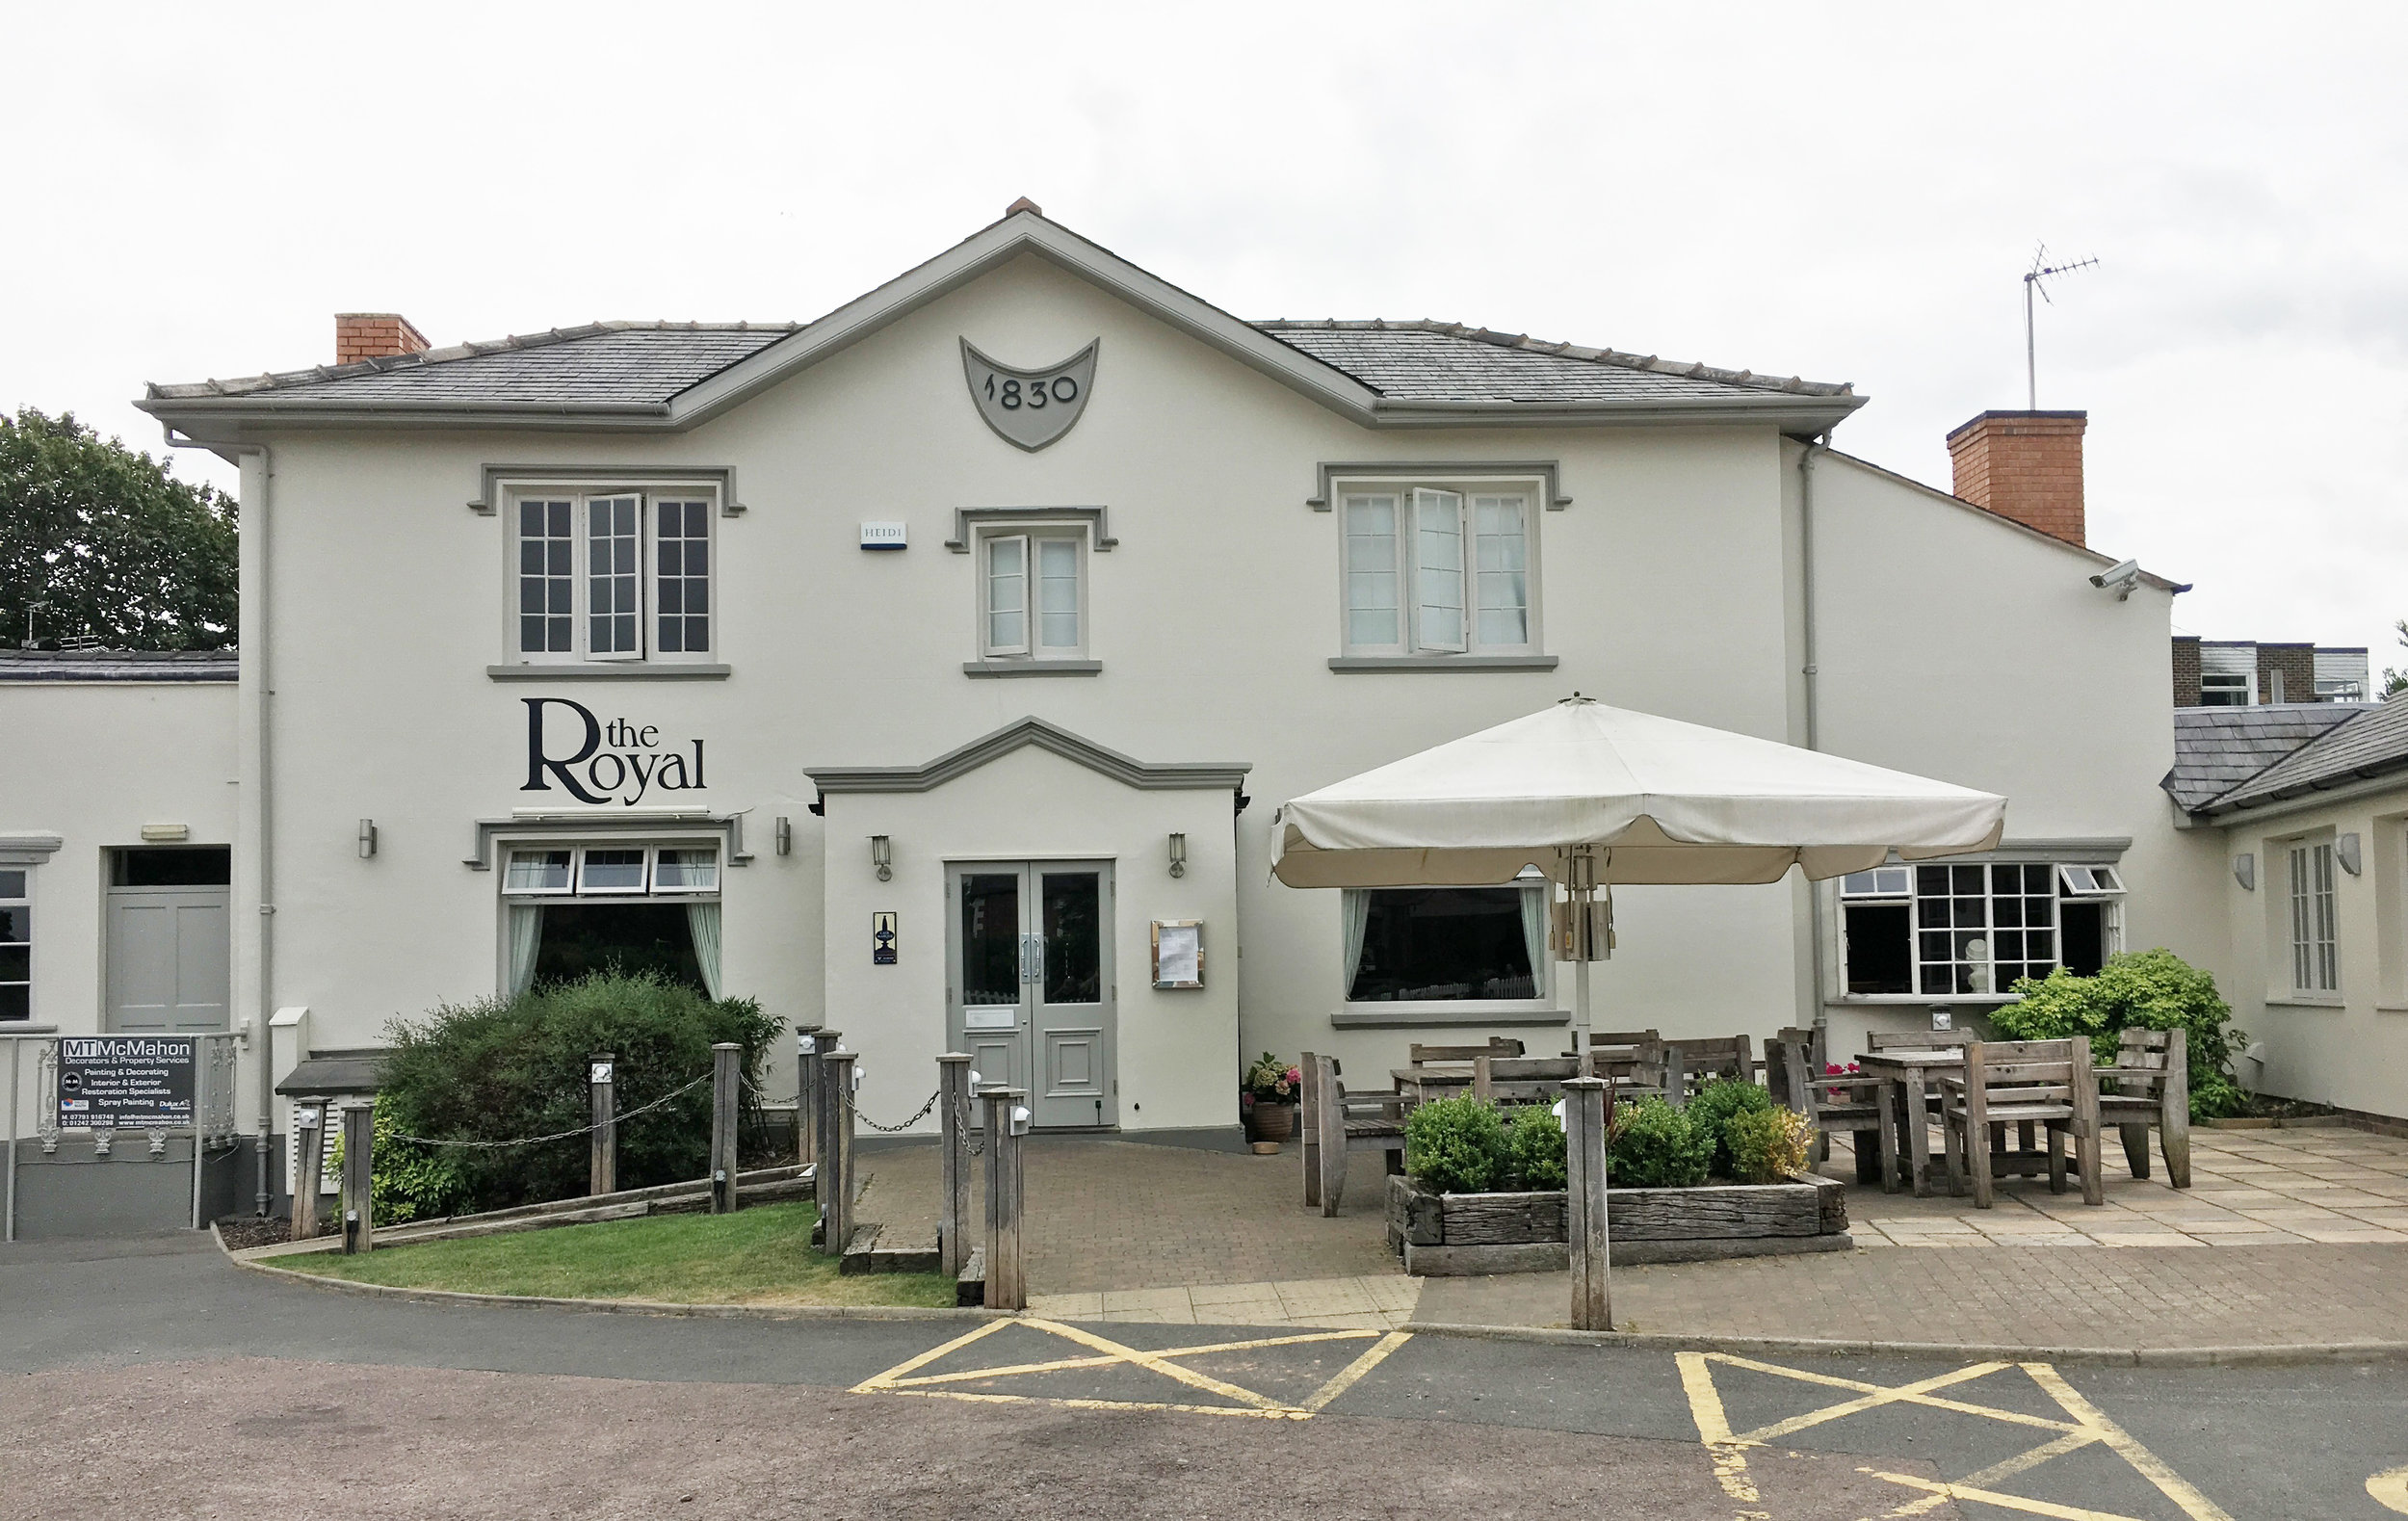 The Royal: Pub exterior finish